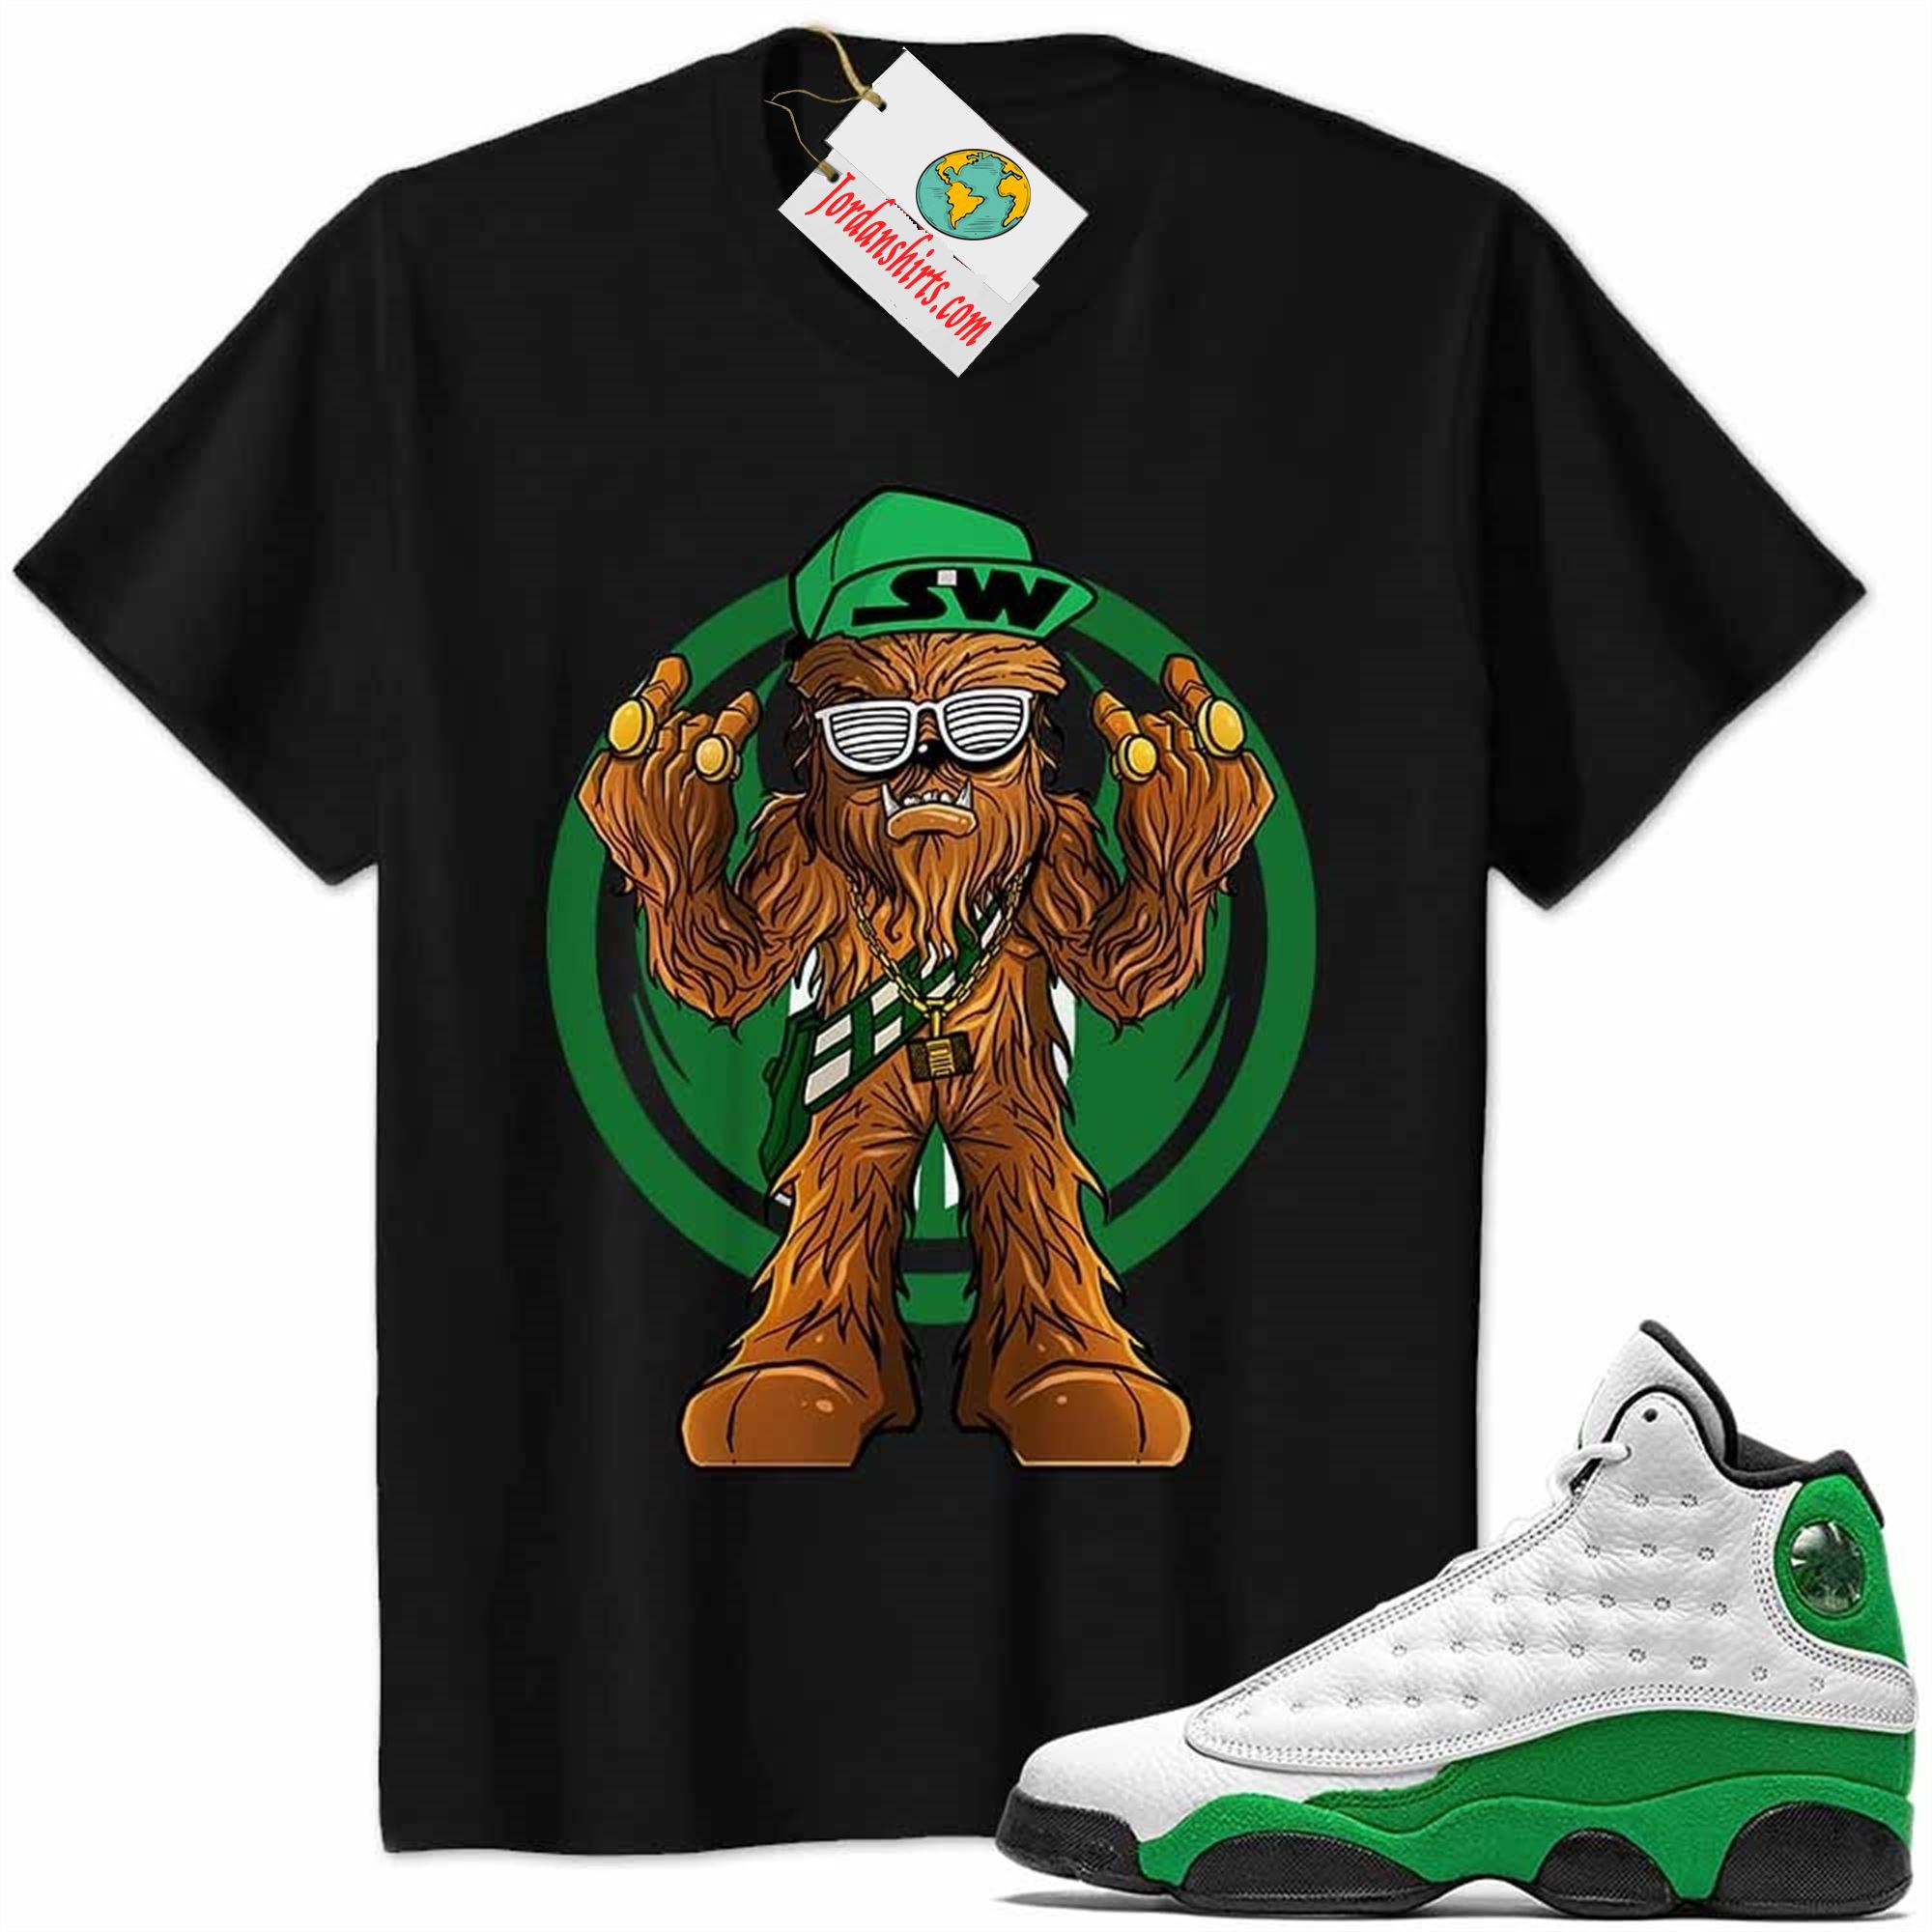 Jordan 13 Shirt, Gangster Chewbacca Stars War Black Air Jordan 13 Lucky Green 13s Size Up To 5xl